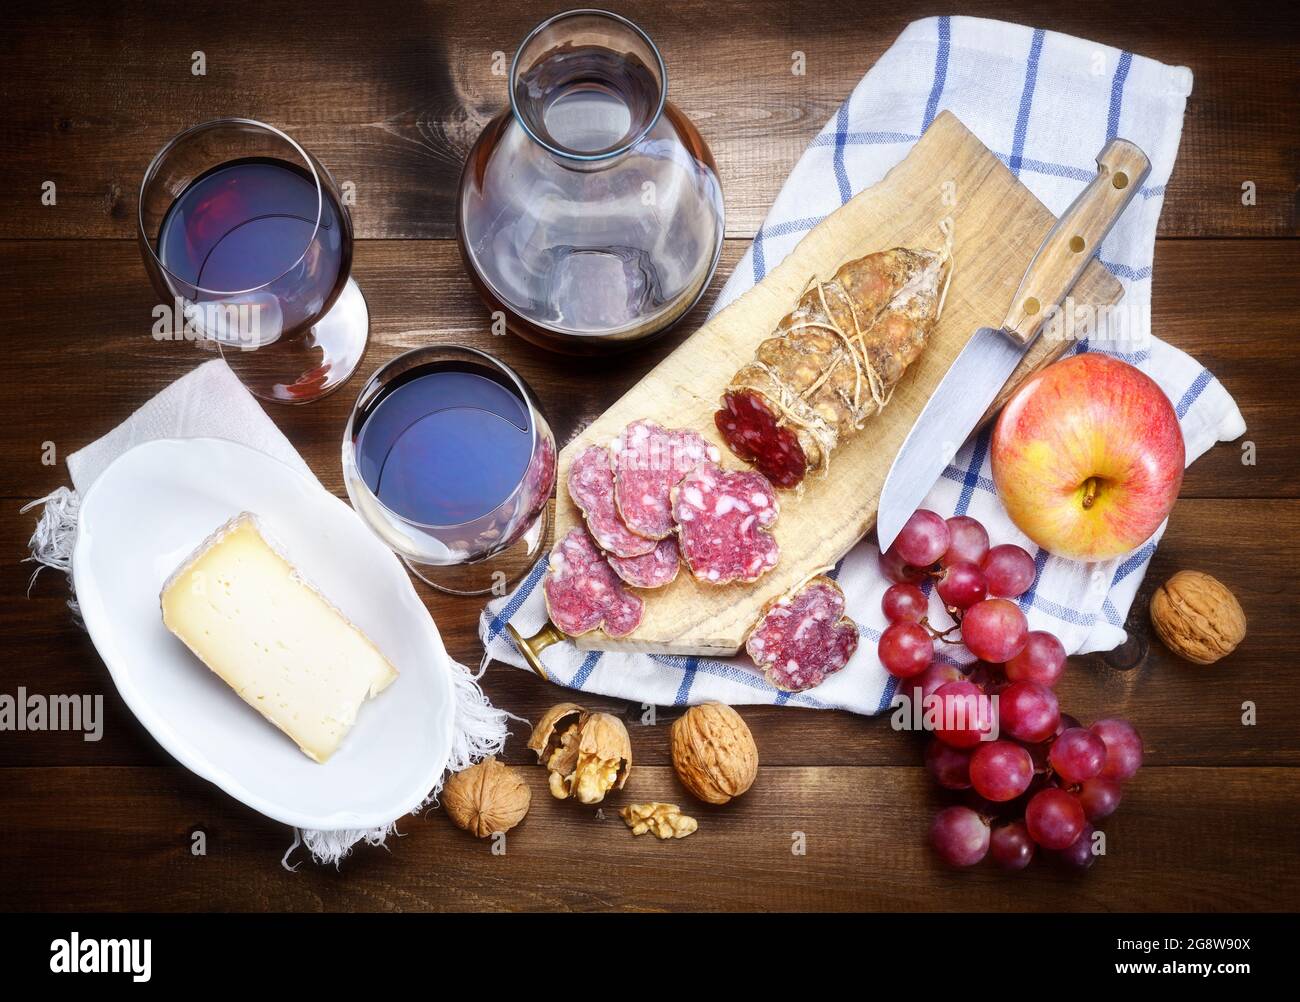 Salami, fromage, raisin, pomme, noix et vin rouge sur fond de bois, vue de dessus. Banque D'Images